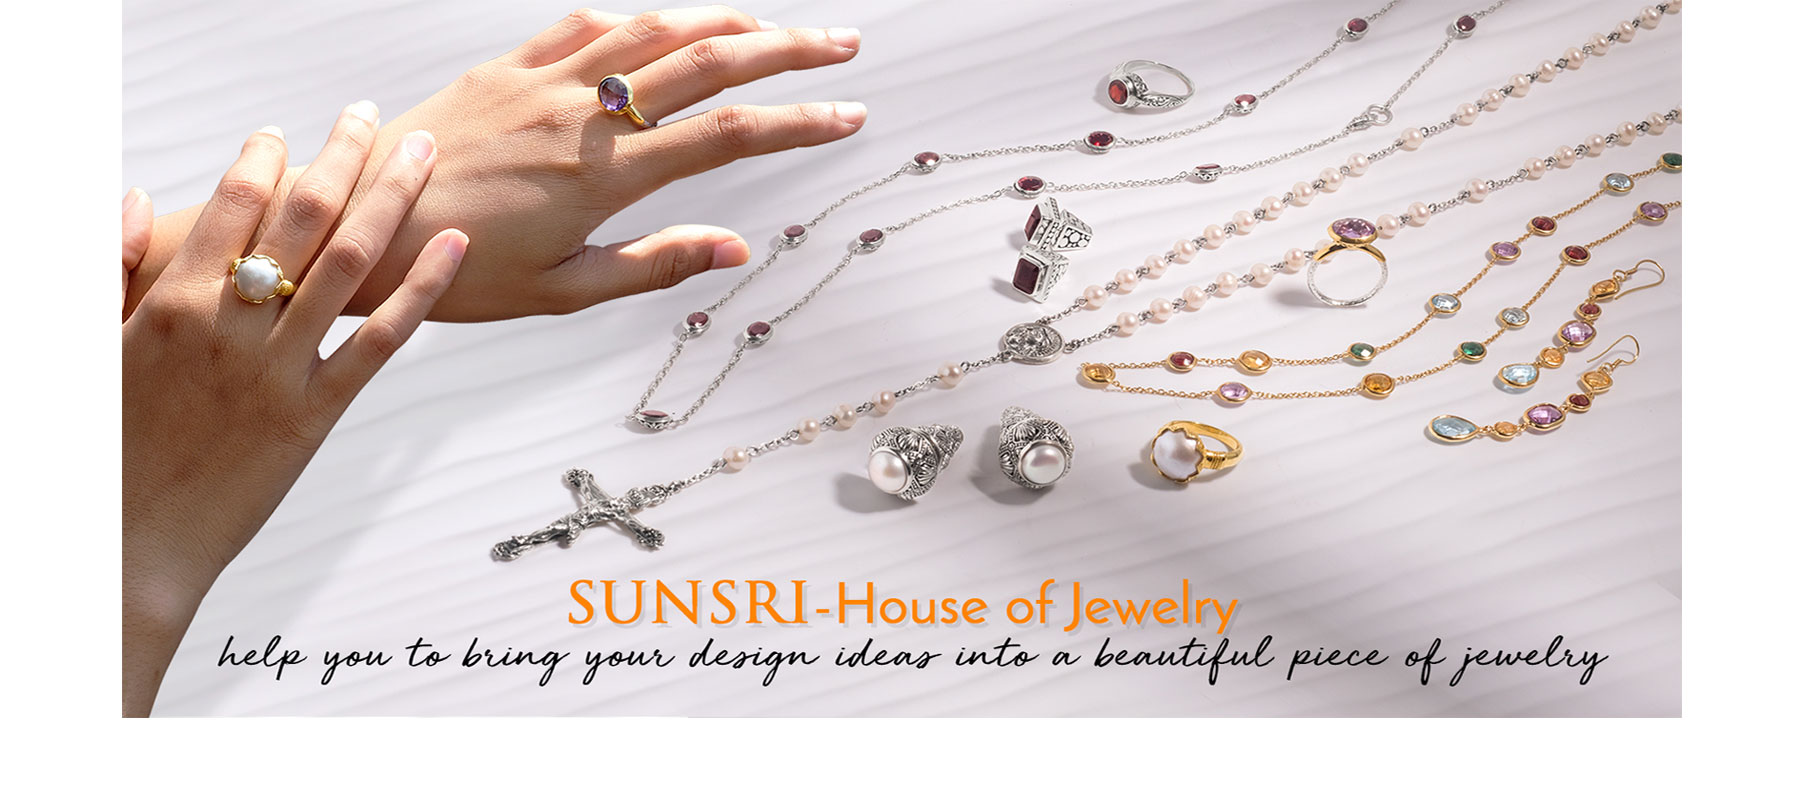 SUNSRI Jewelry Manufacturing